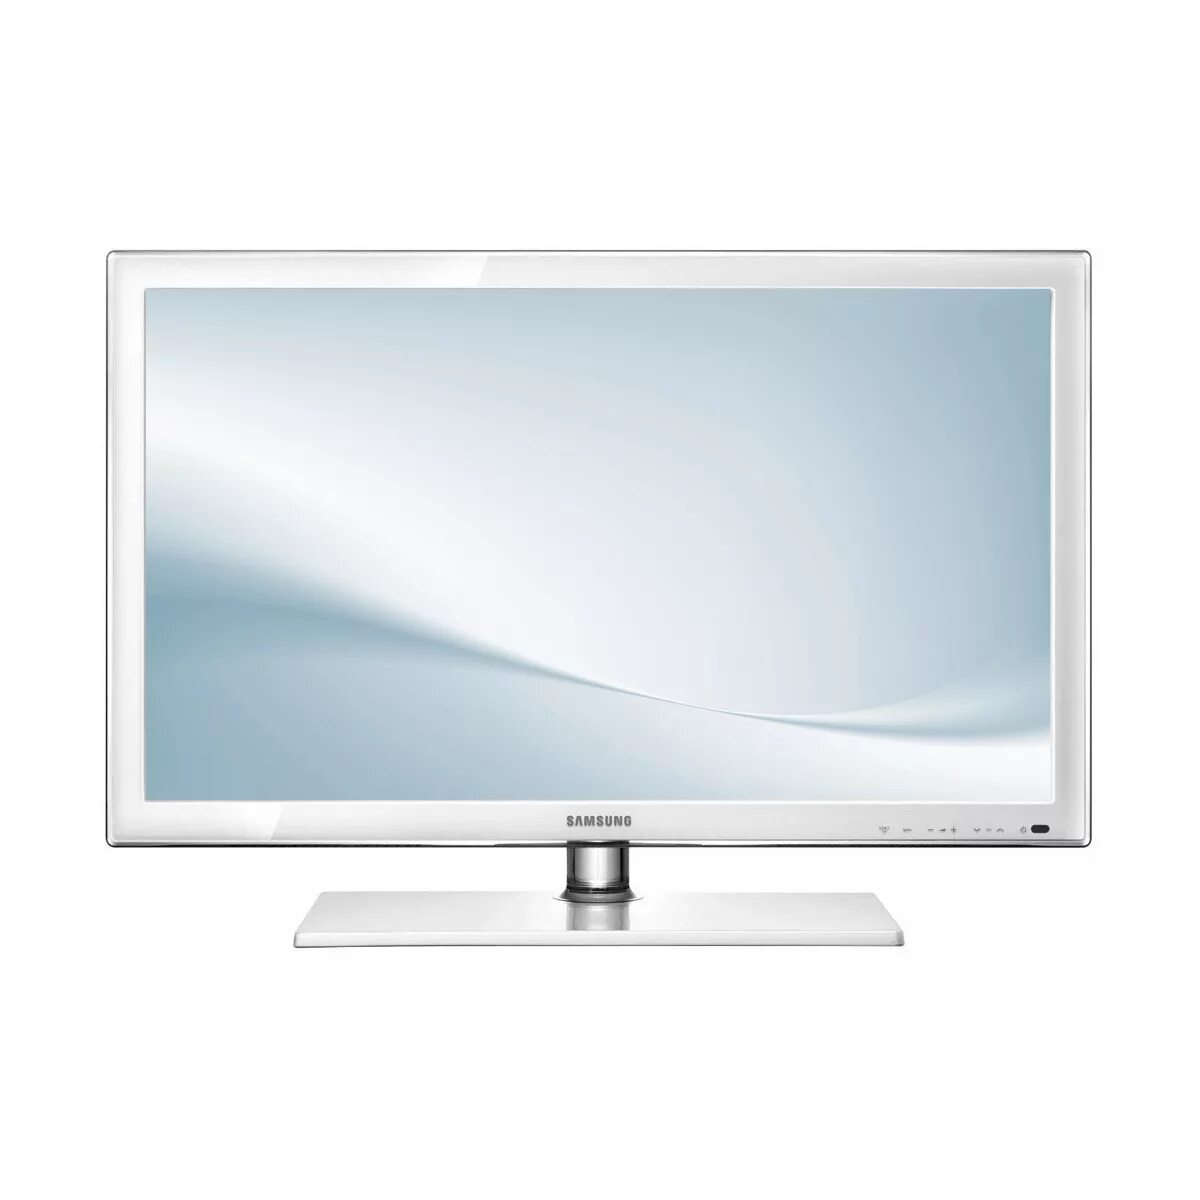 Телевизоры самсунг омск. Телевизор самсунг ue22d5010. Телевизор Samsung ue22d5010 22". Белый телевизор самсунг 32 дюйма Smart. Самсунг LCD 24 дюйма белый.